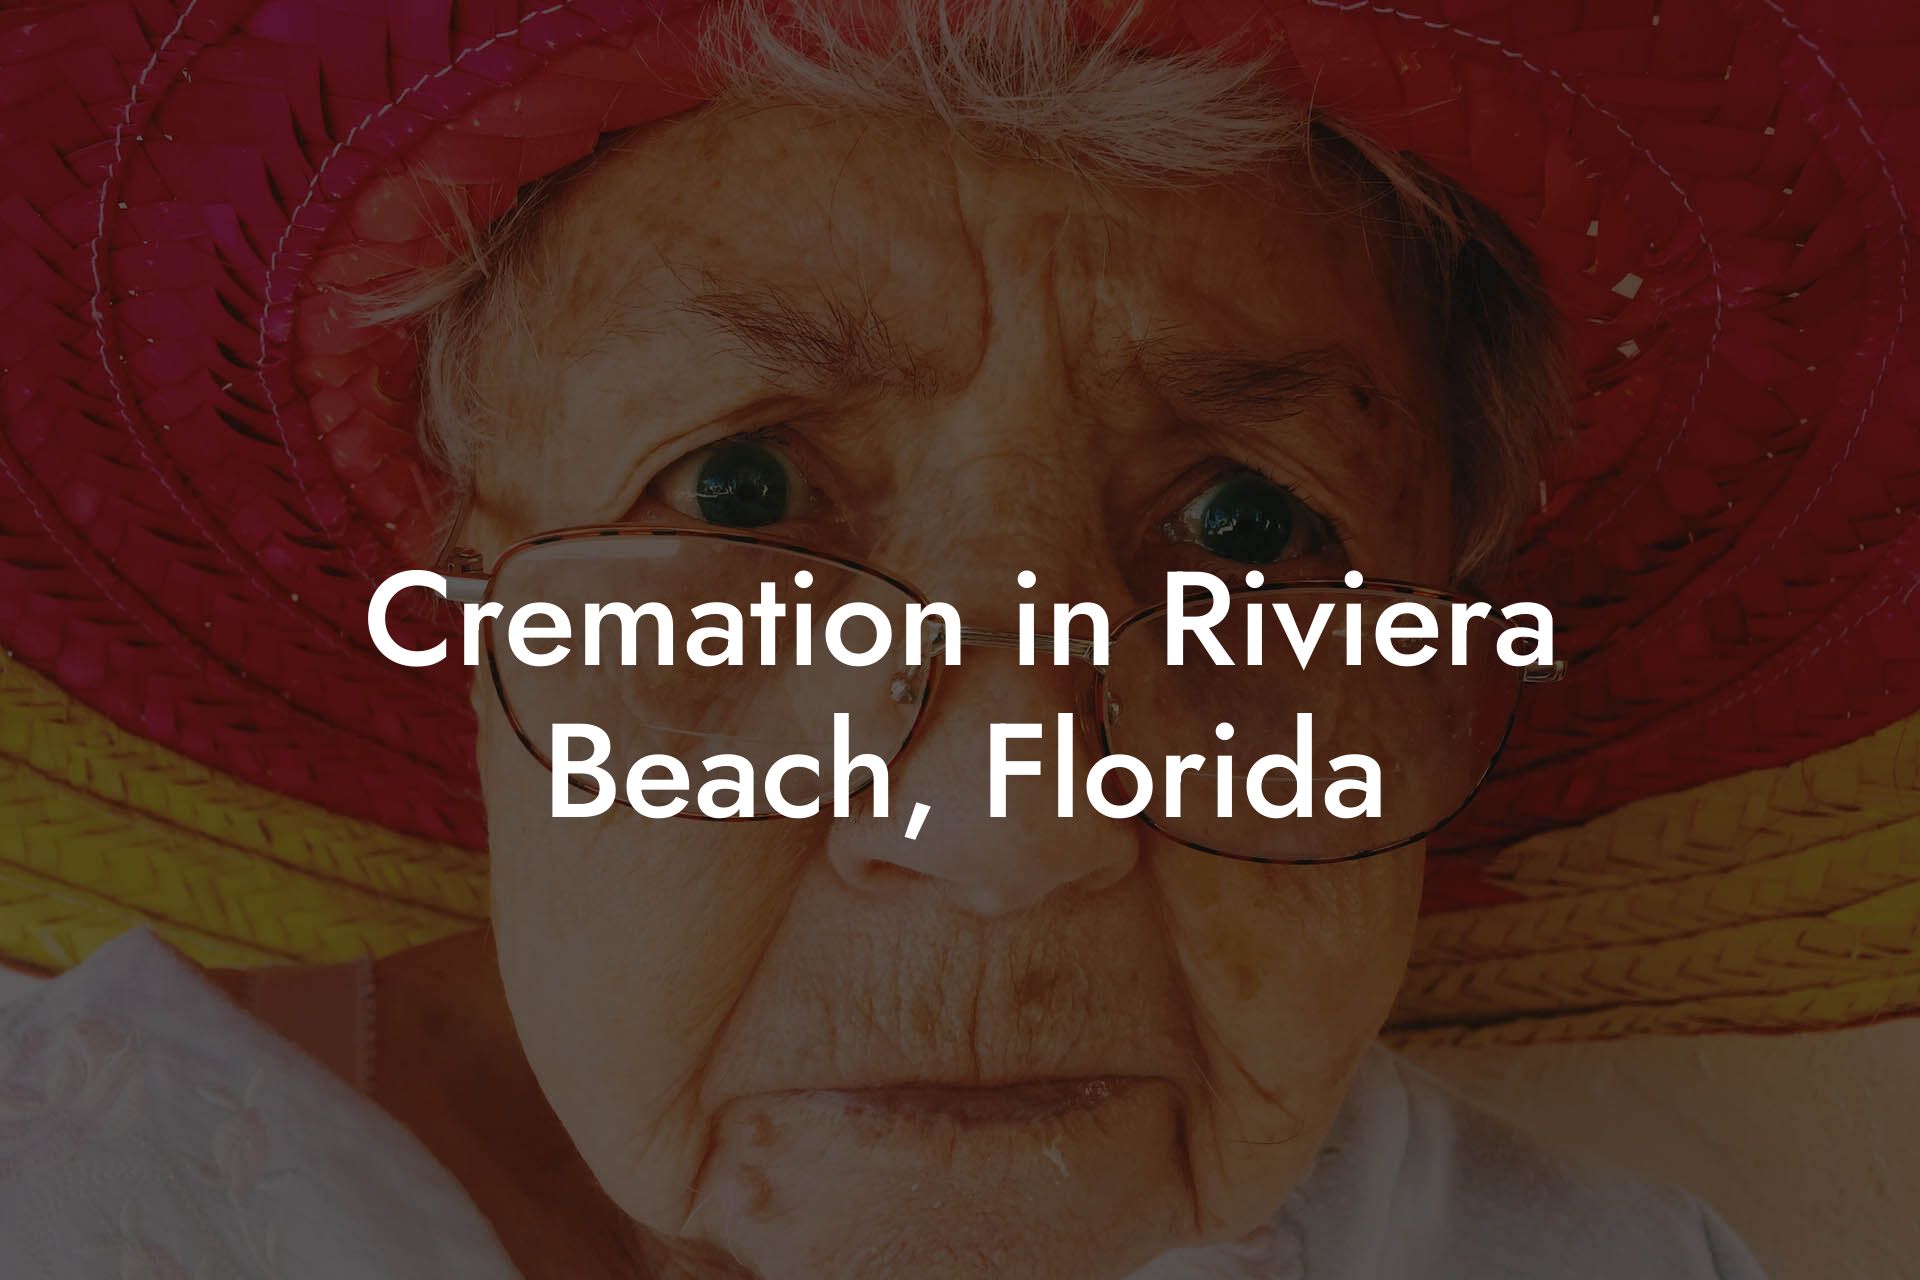 Cremation in Riviera Beach, Florida